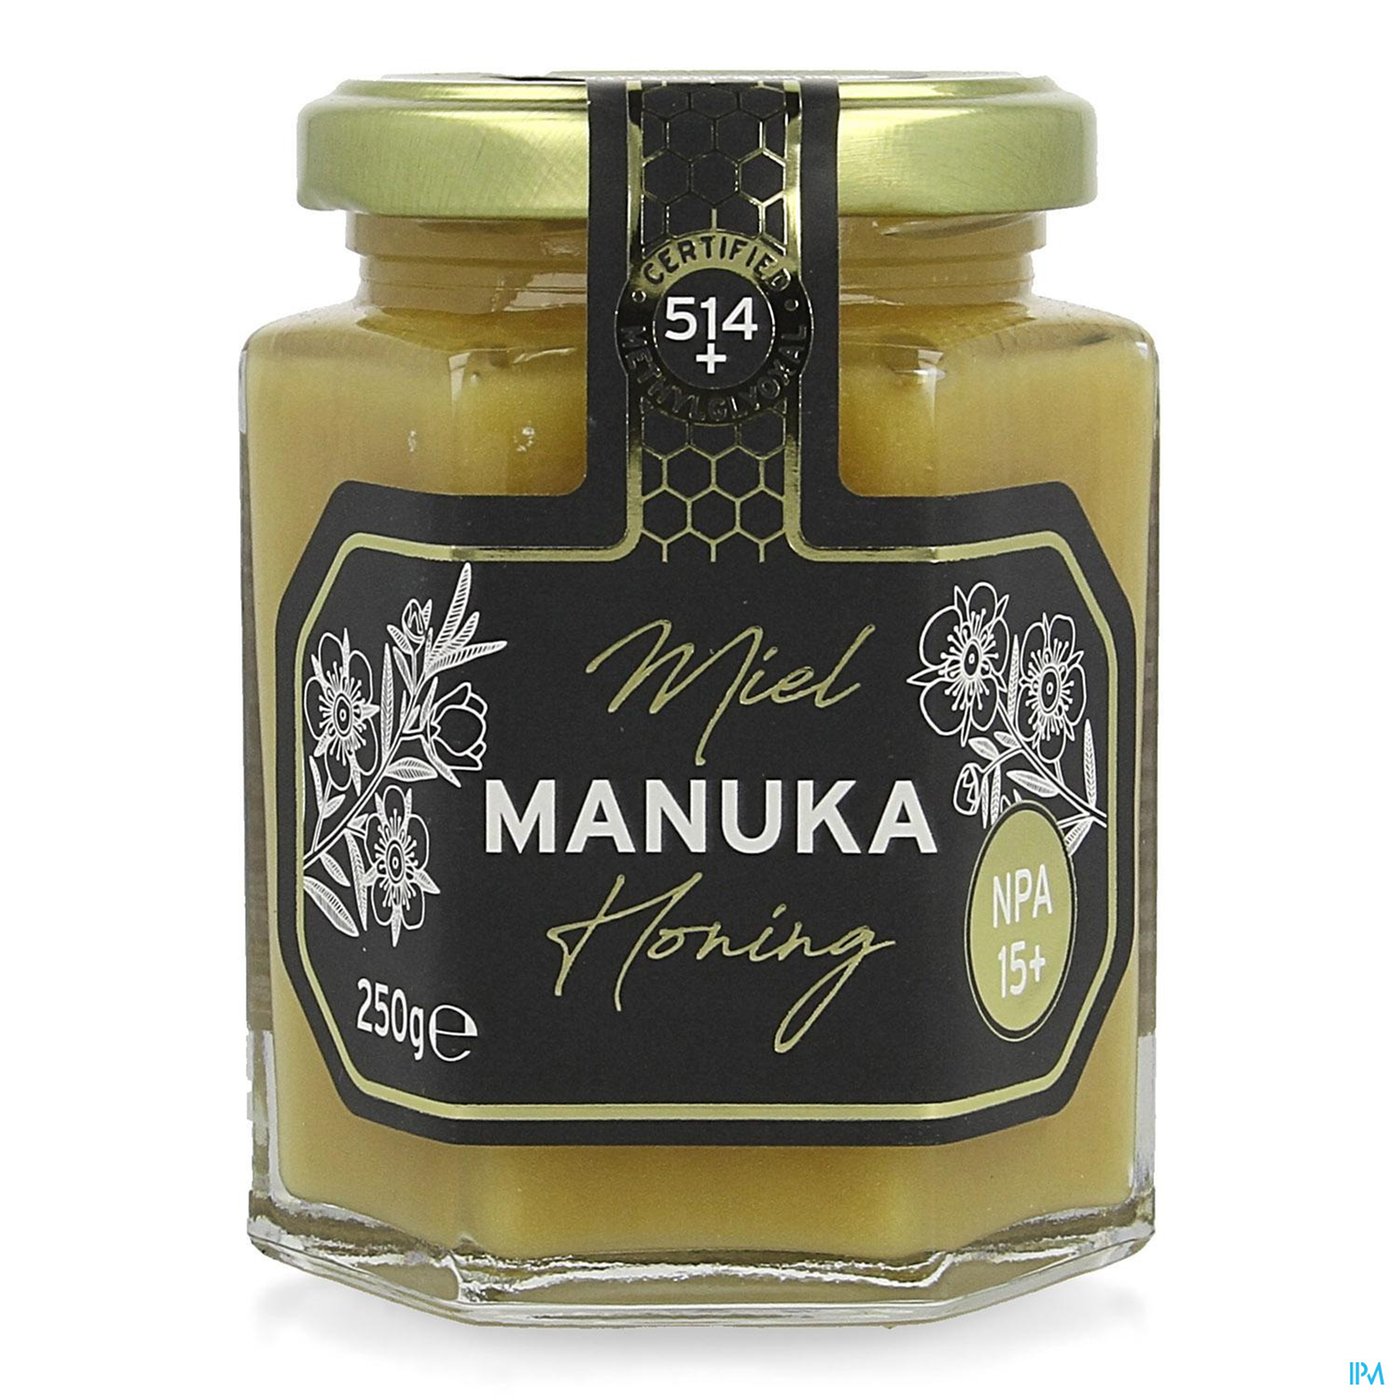 Honing Manuka Npa15+/mg0514 Vast 250g Revogan